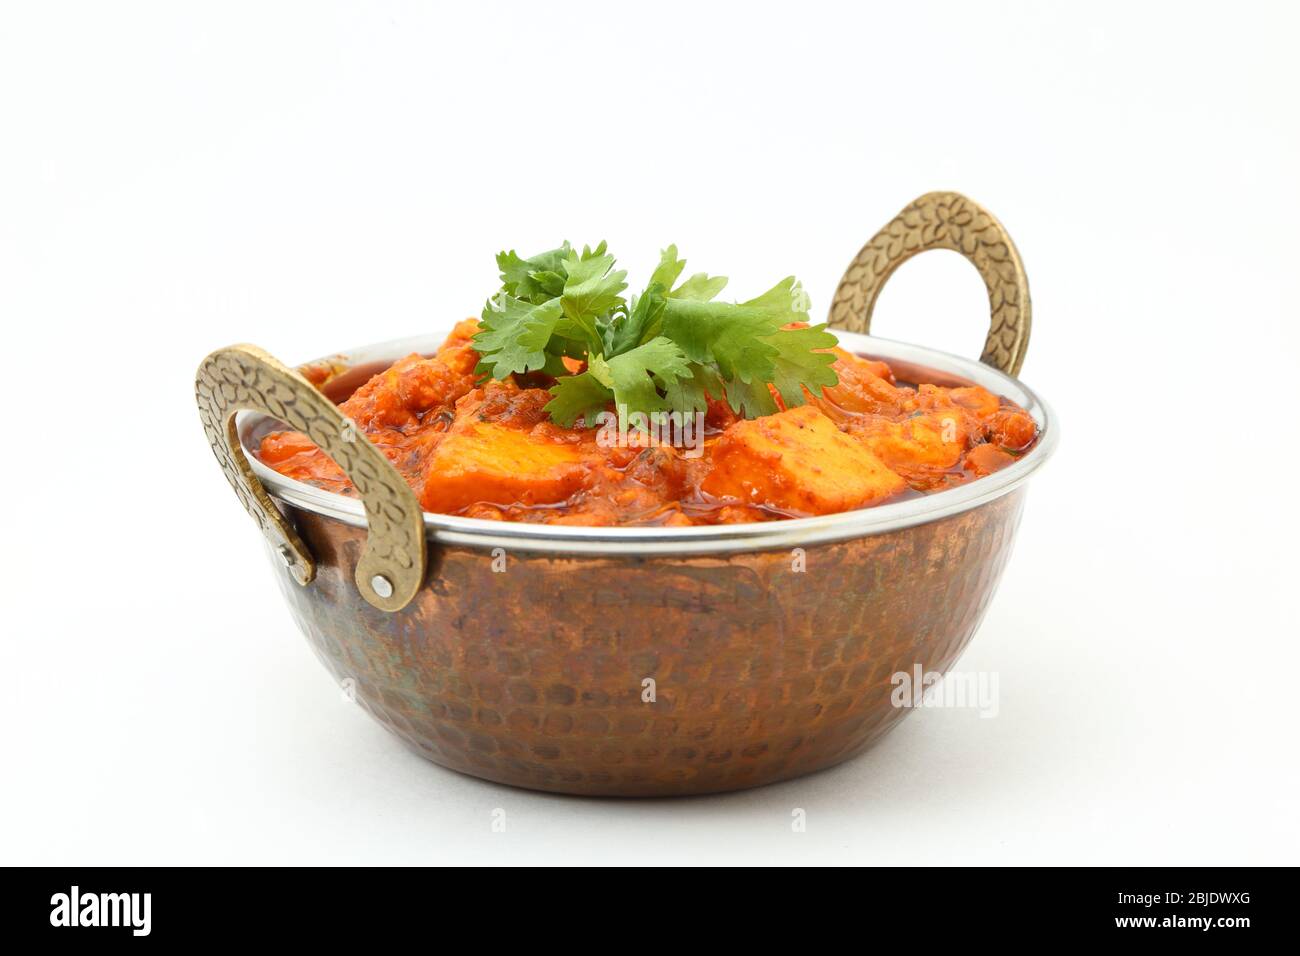 HÜTTENKÄSE IM INDISCHEN STIL VEGETARISCHES CURRY GERICHT. Kadai Paneer: Traditionelle indische Küche Stockfoto